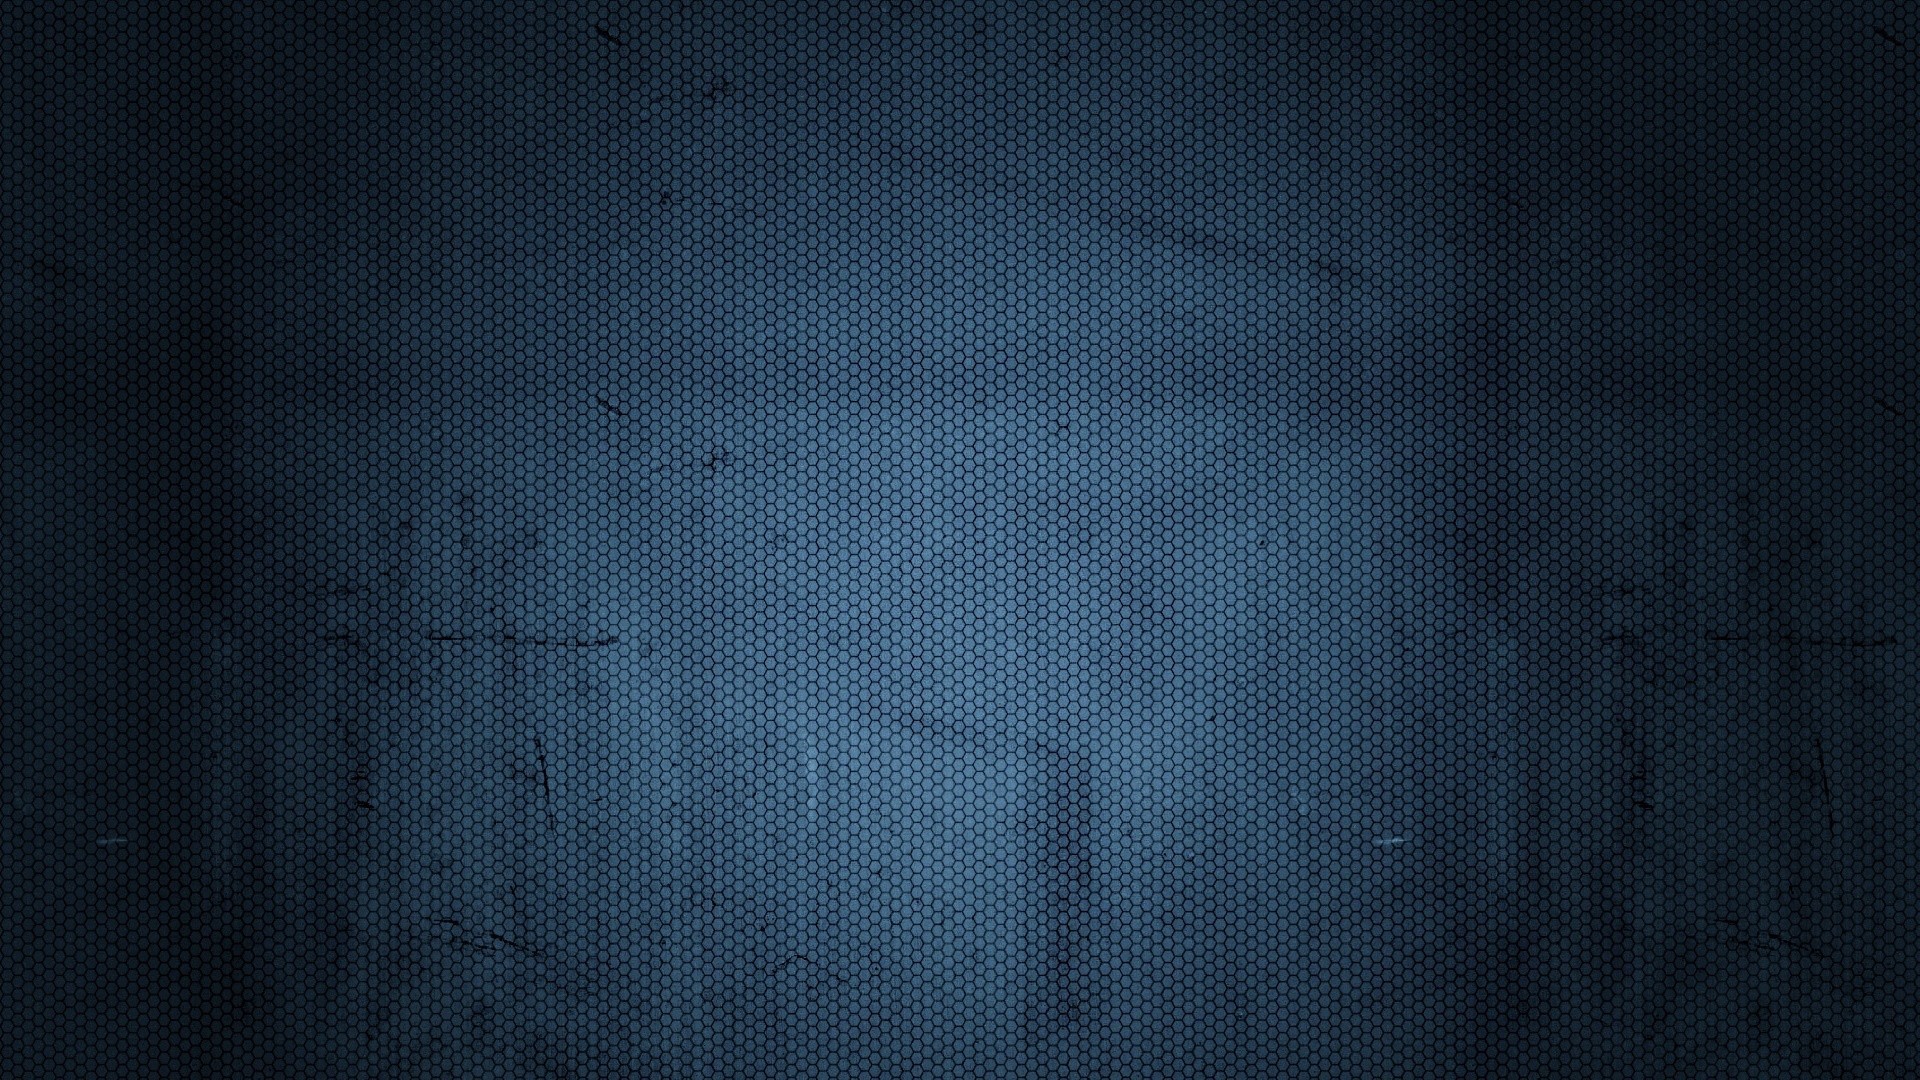 Abstract Wallpaper Texture Dark Blue